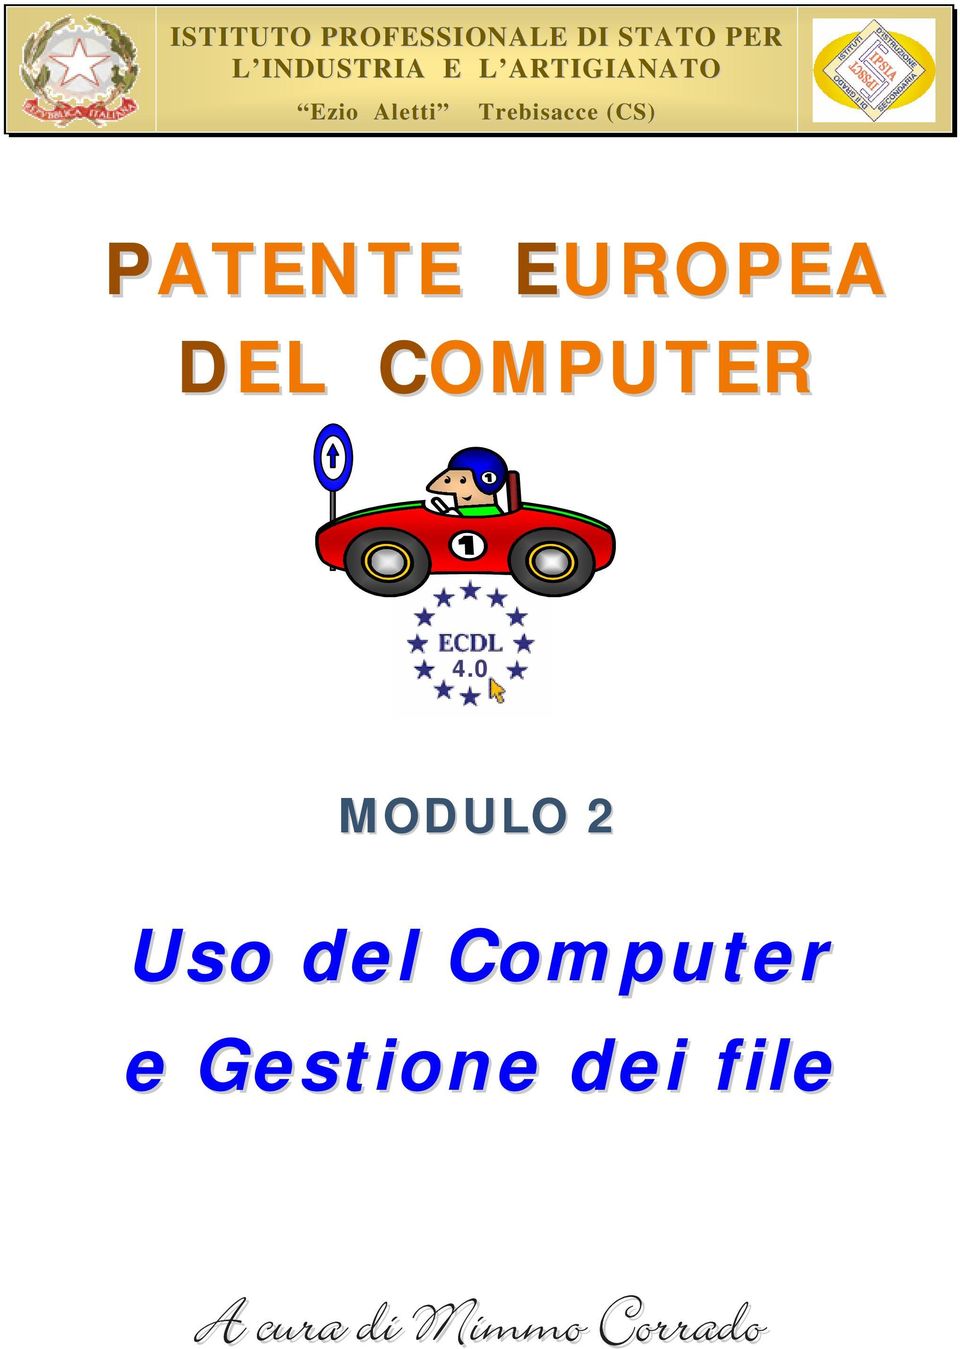 PATENTE EUROPEA DEL COMPUTER 4.